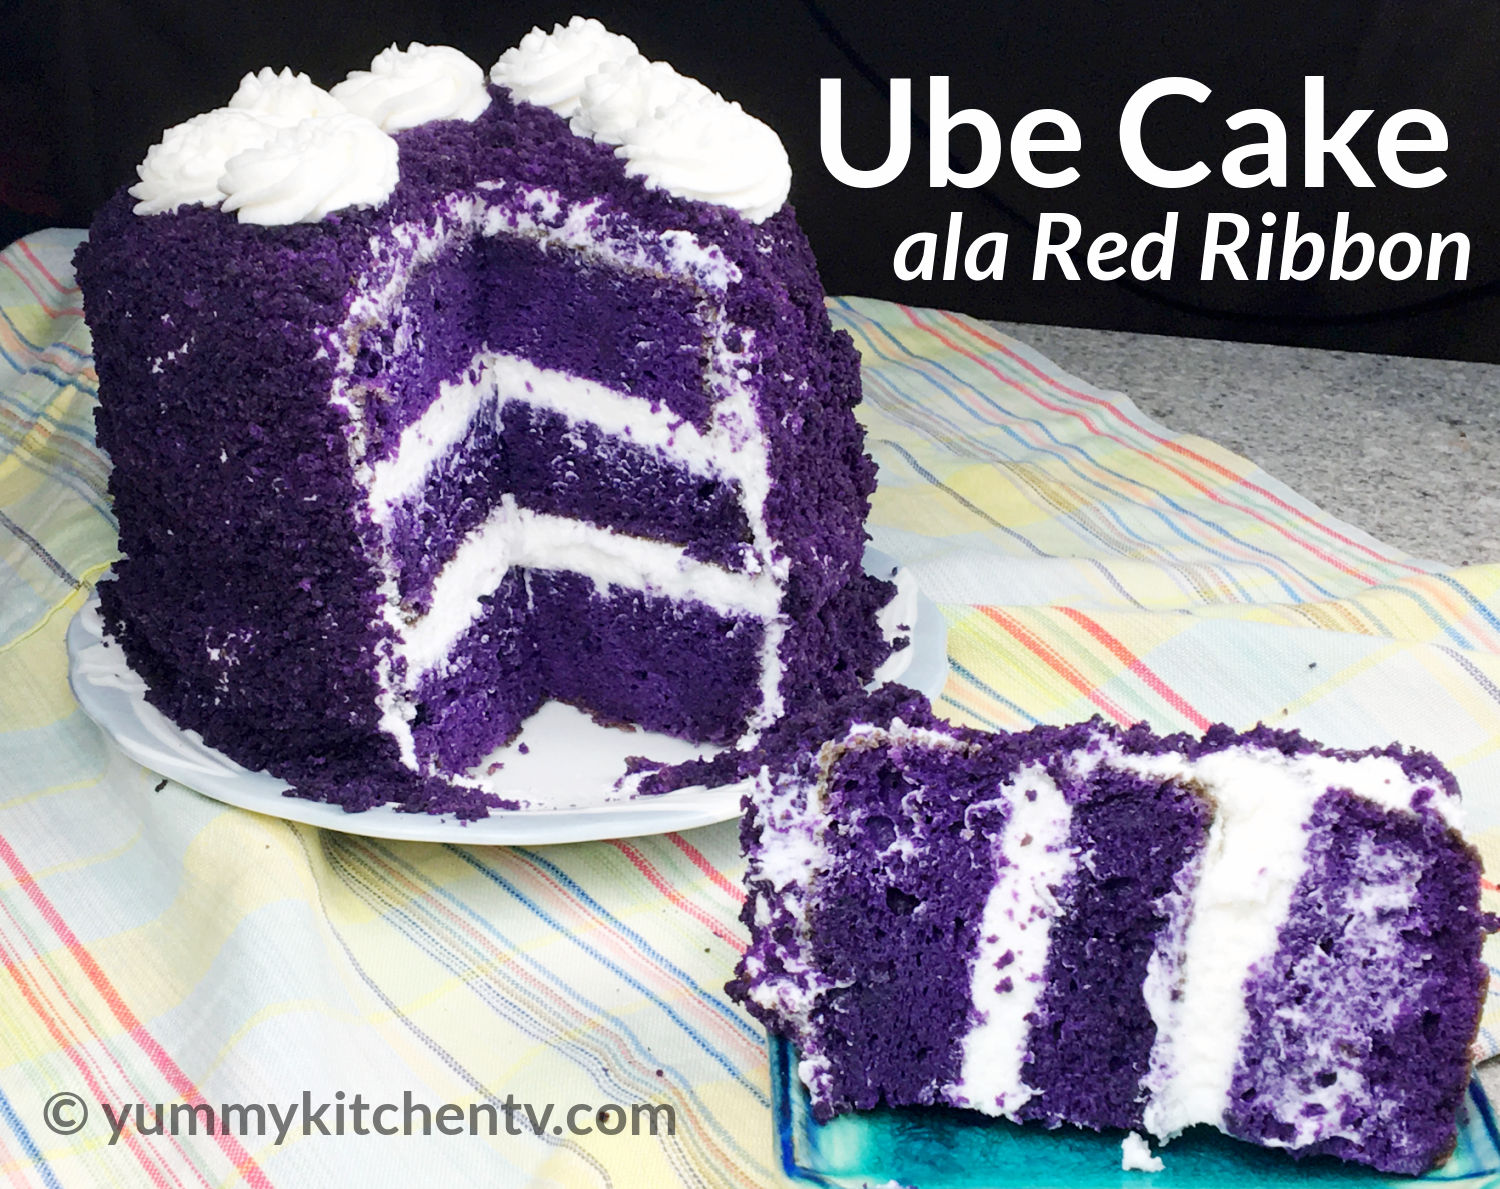 Ube Cake with Ube Halaya Frosting (and Ube Cupcakes)